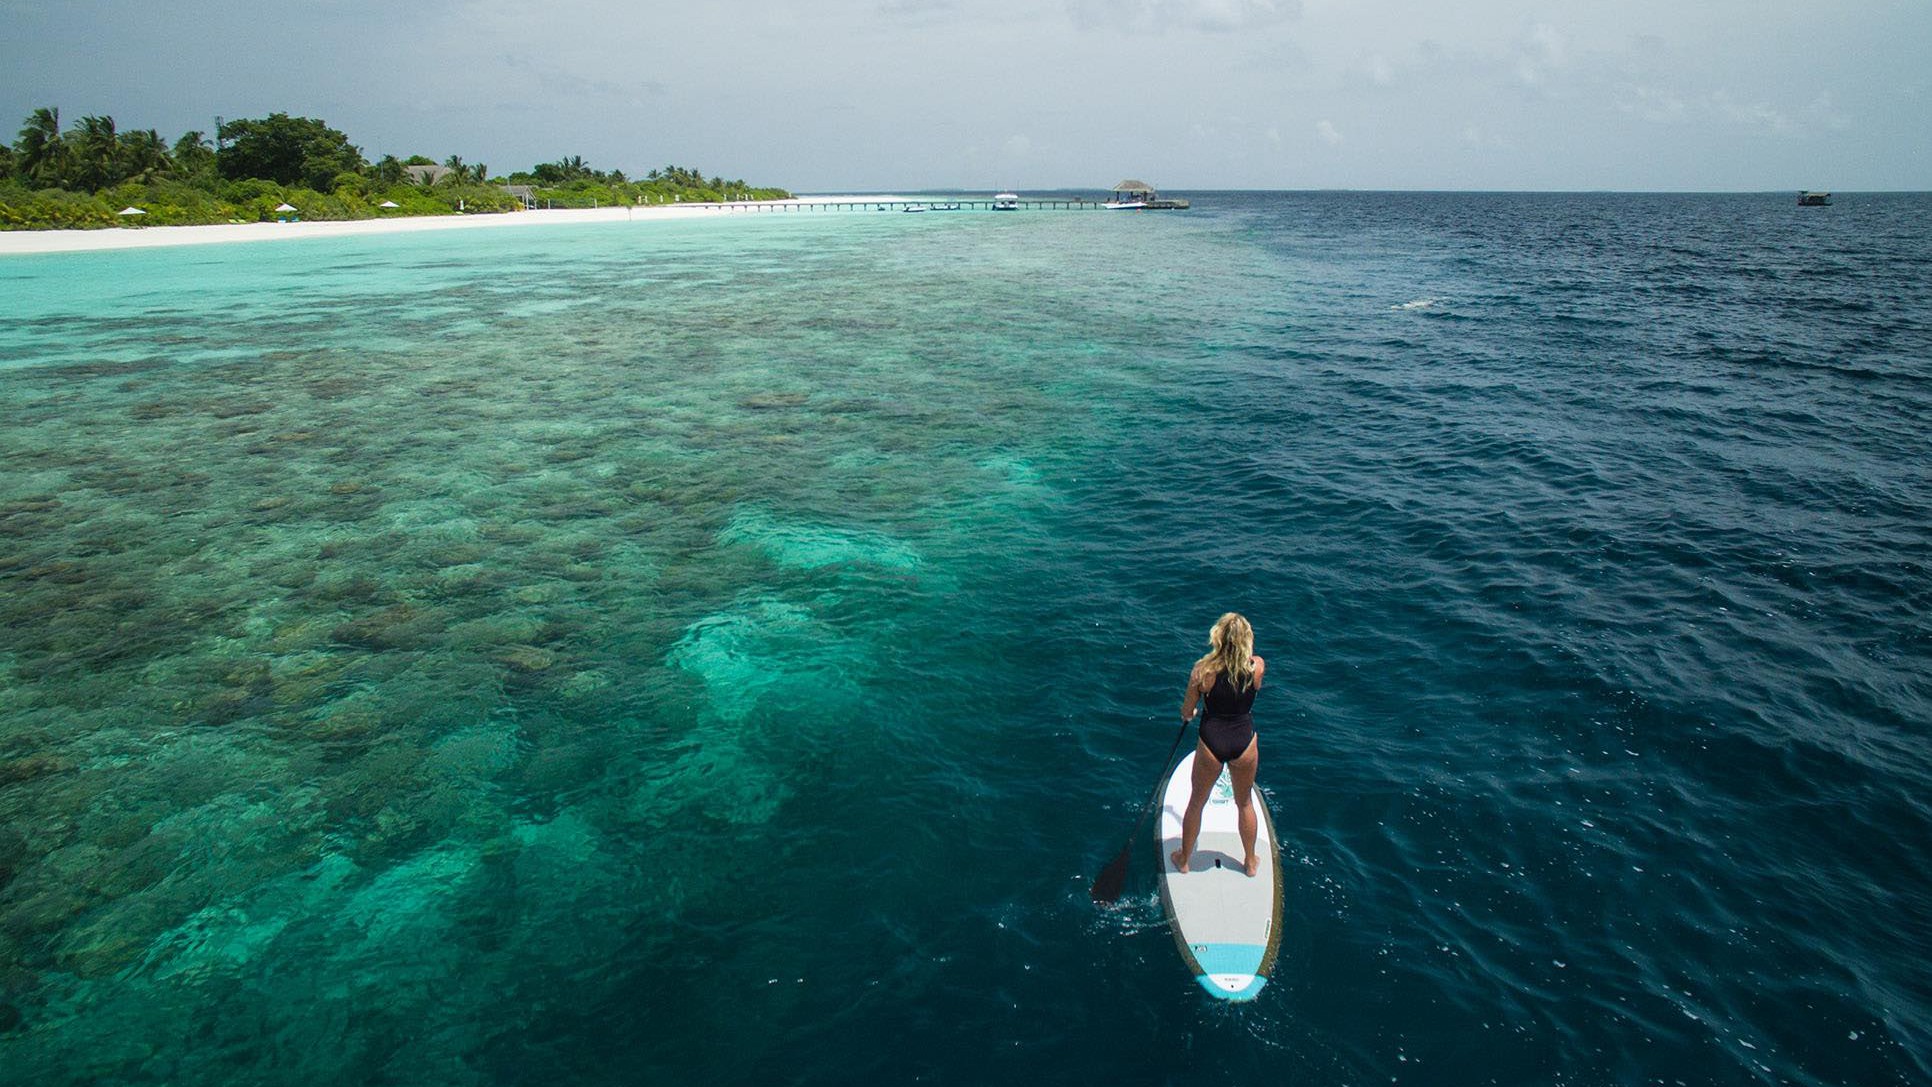 【携程攻略】克哈瓦岛安娜塔拉吉哈瓦岛（AKV岛）景点,马尔代夫，安娜塔拉吉哈瓦岛，简称AKV，物超所值，美！梦一般的岛屿…